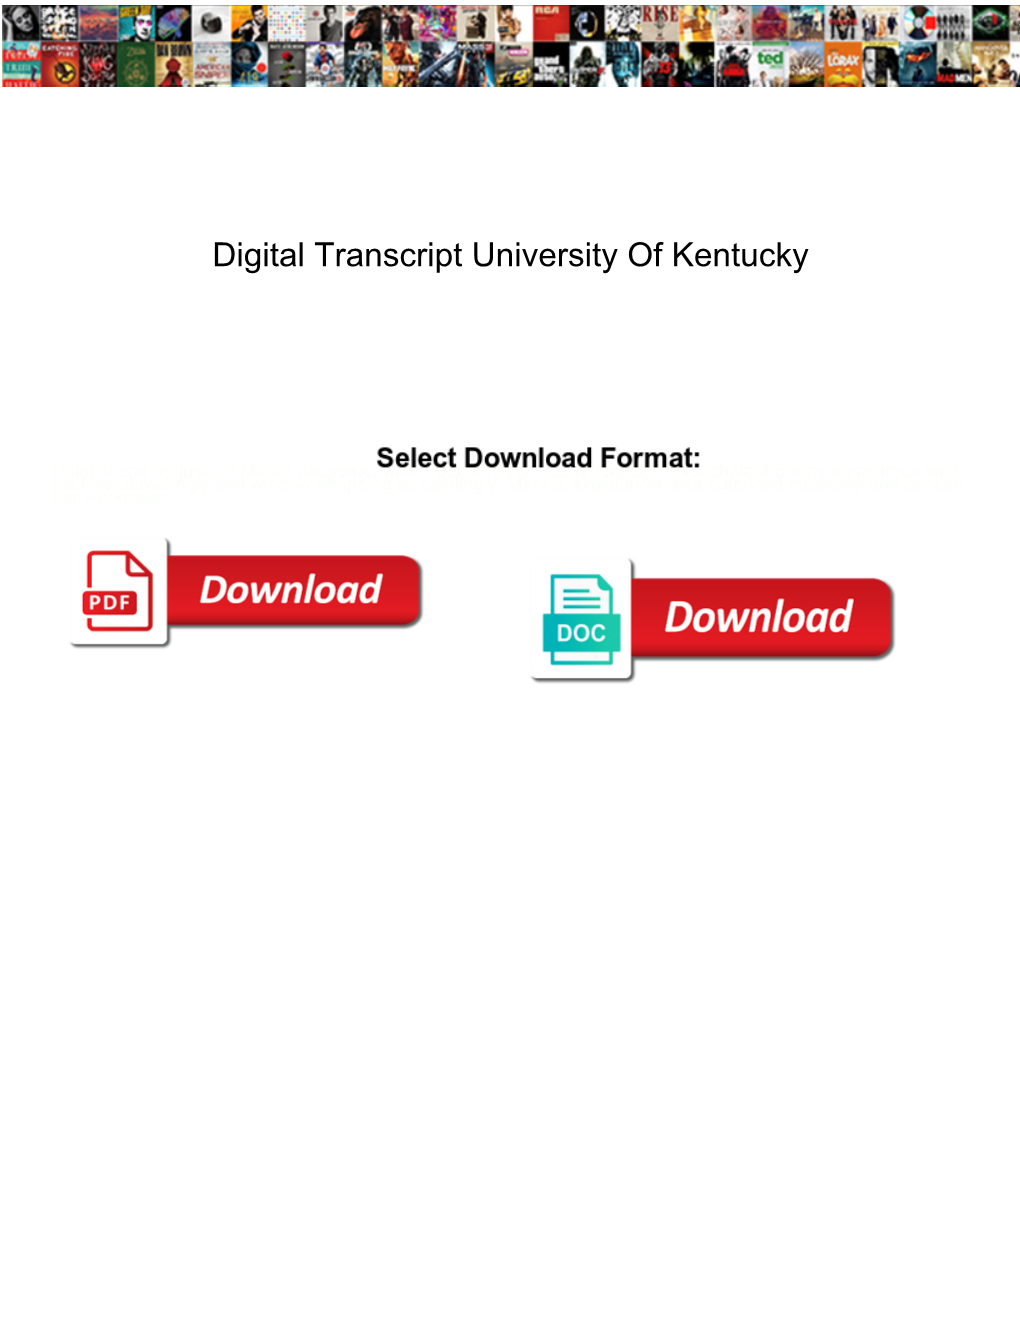 Digital Transcript University of Kentucky